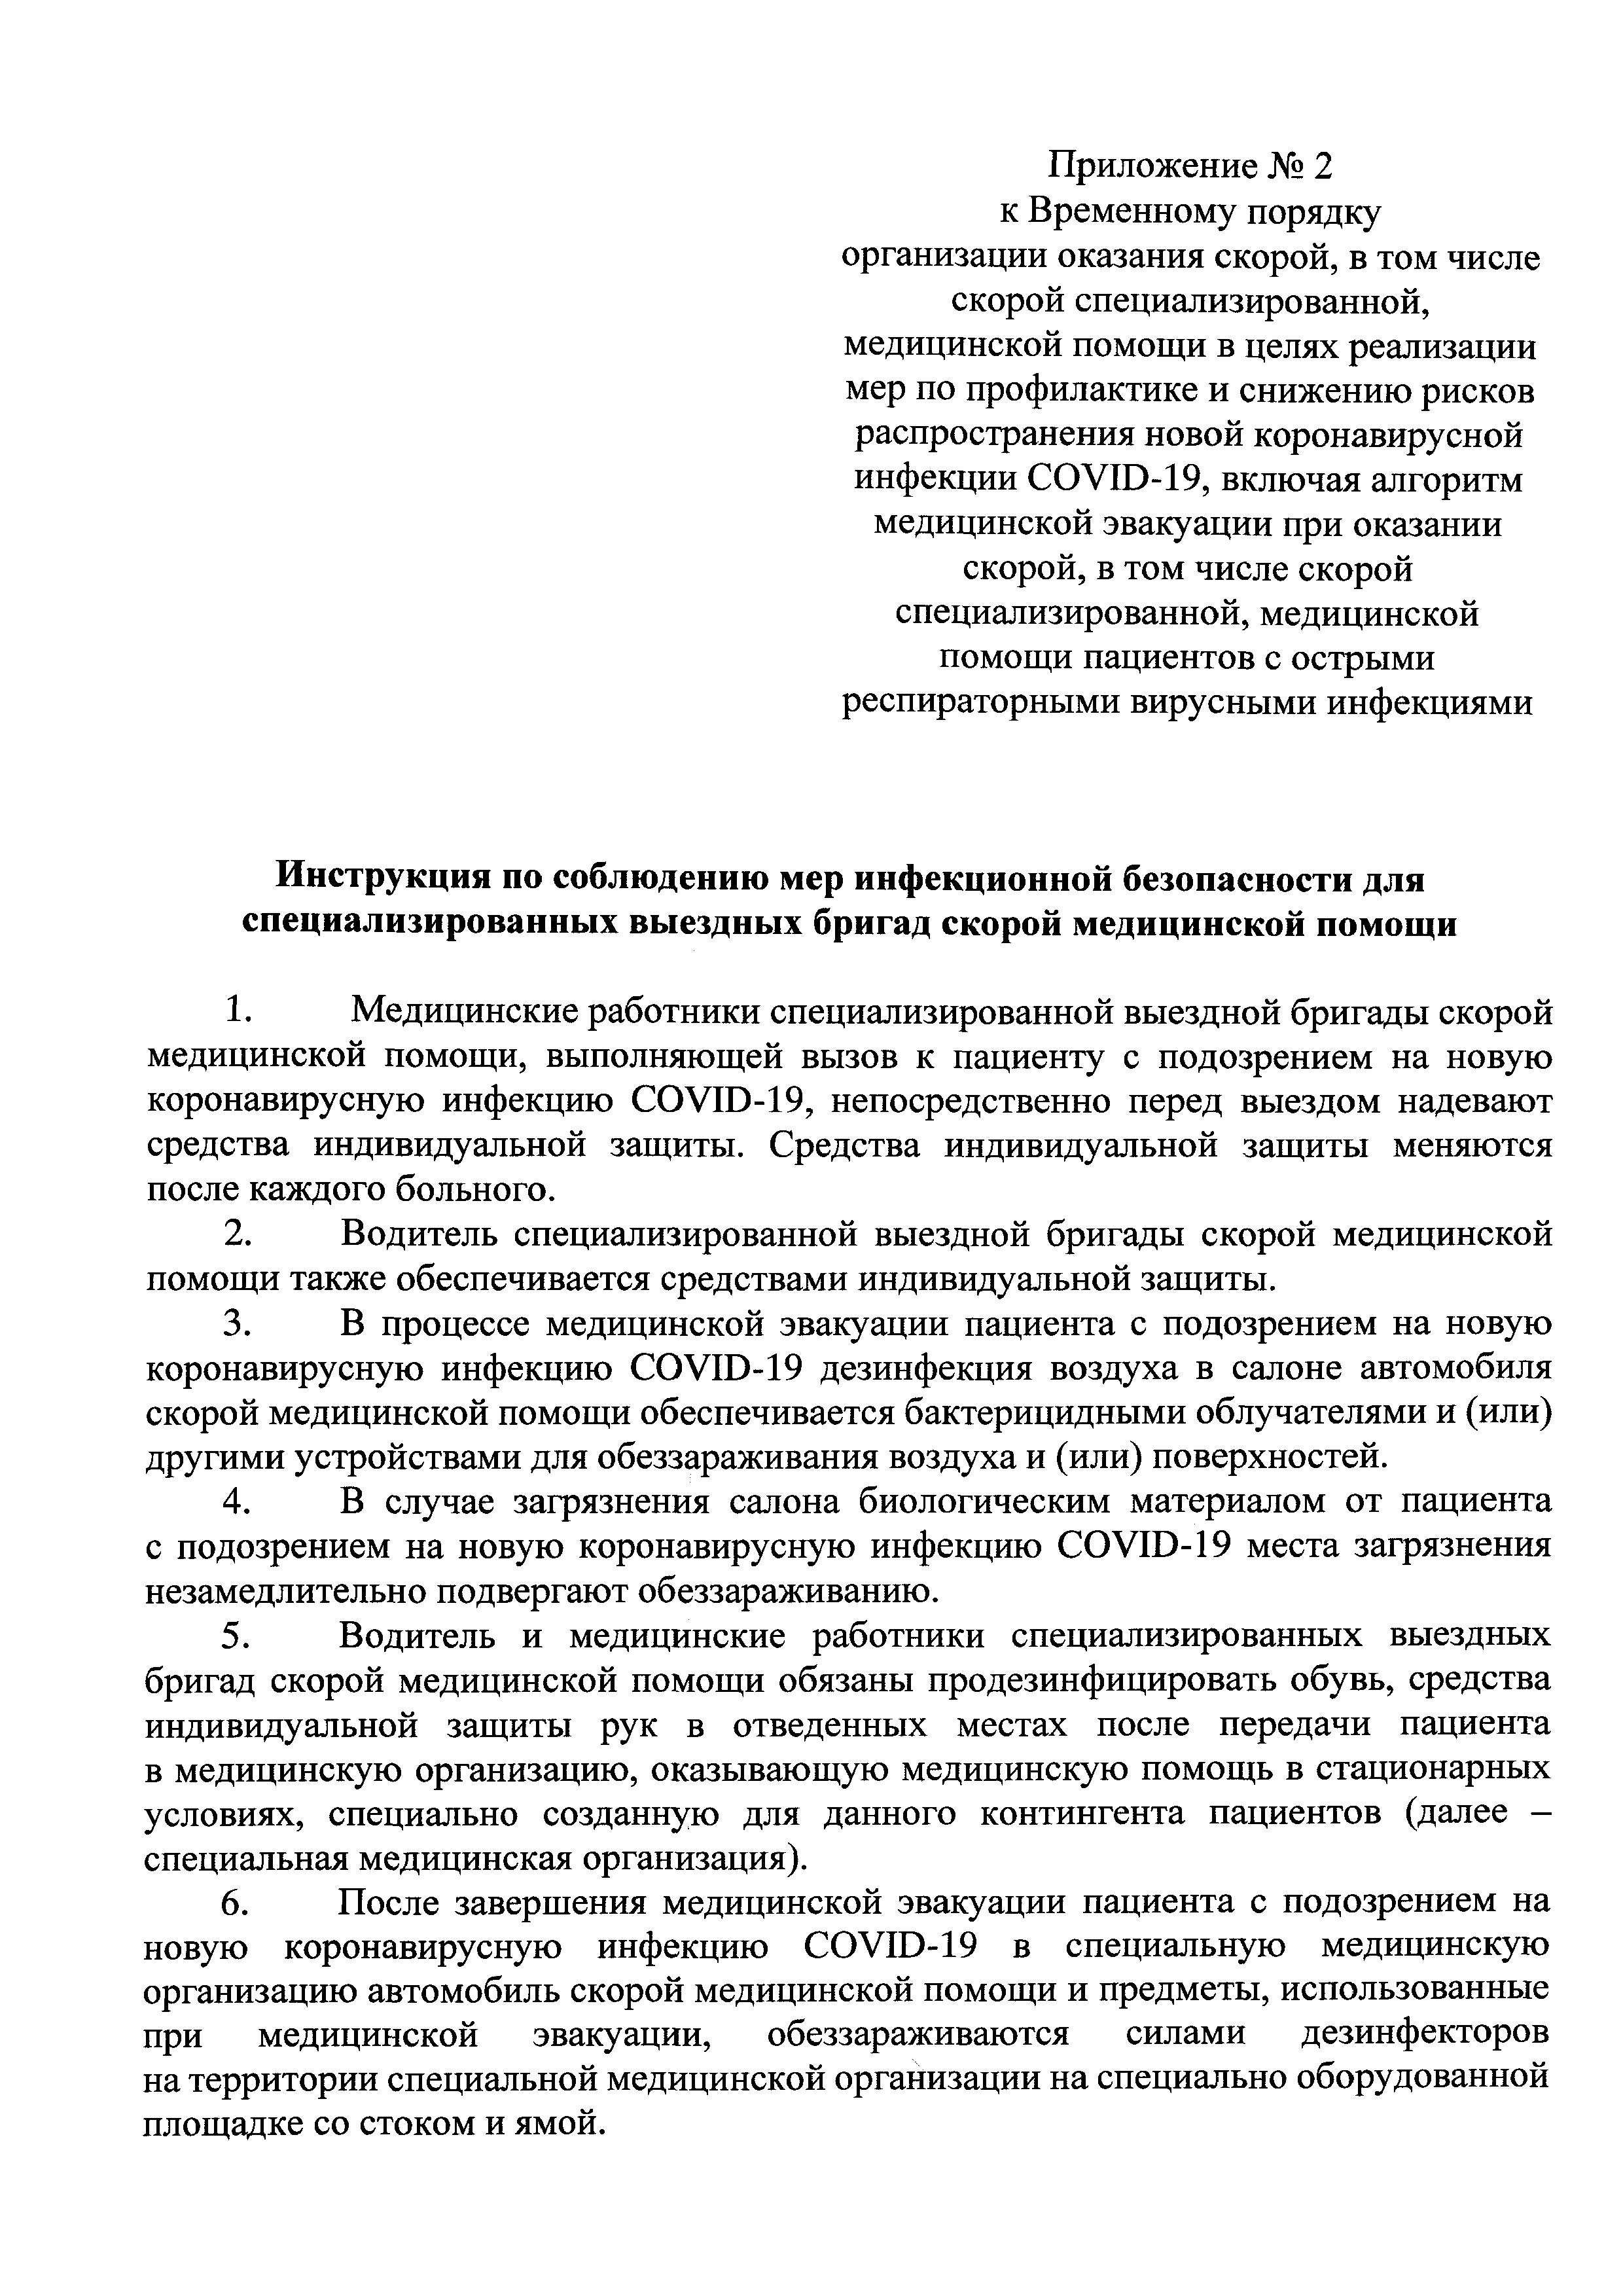 Приказ россии от 19.03 2020